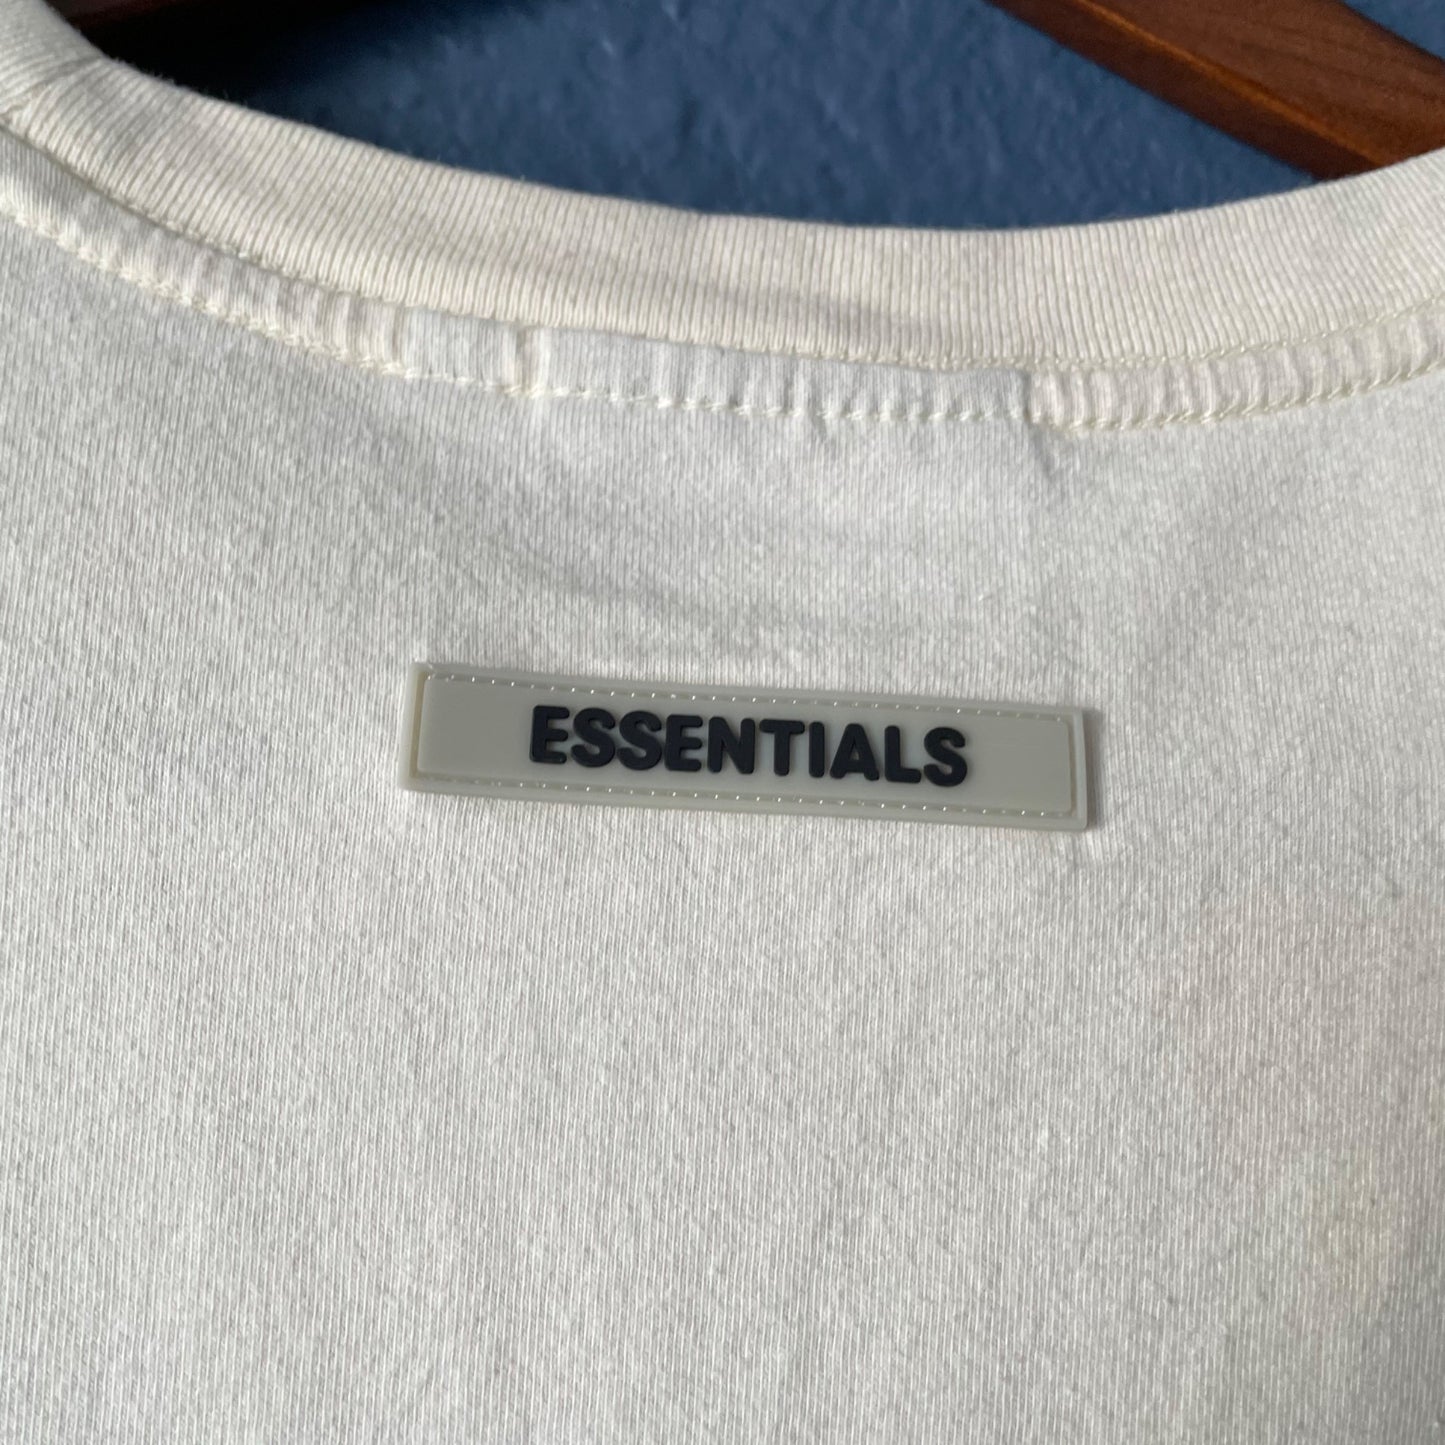 Essentials Fear of God Cream Short Sleeve Oversize T-Shirt Men's Size Medium